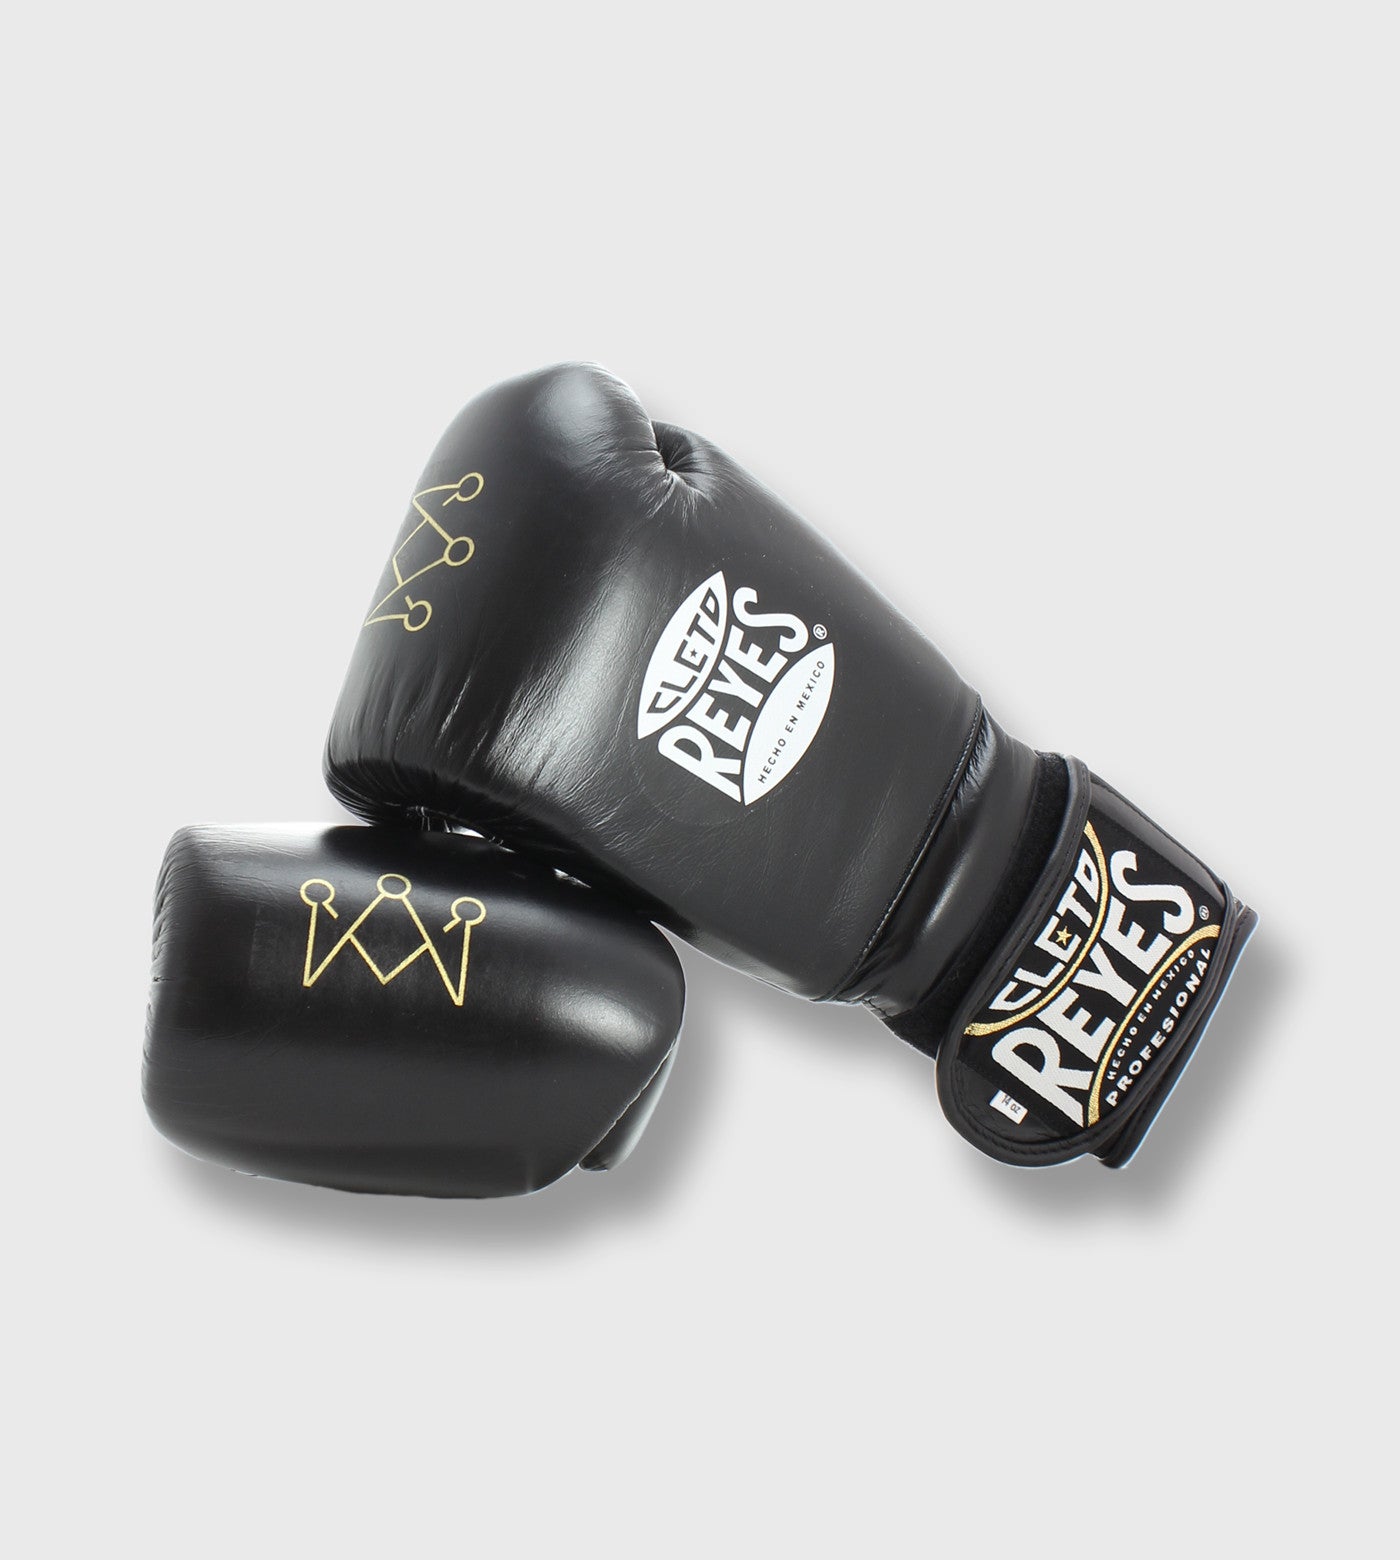 Cleto Reyes Boxing Gloves / Symbol